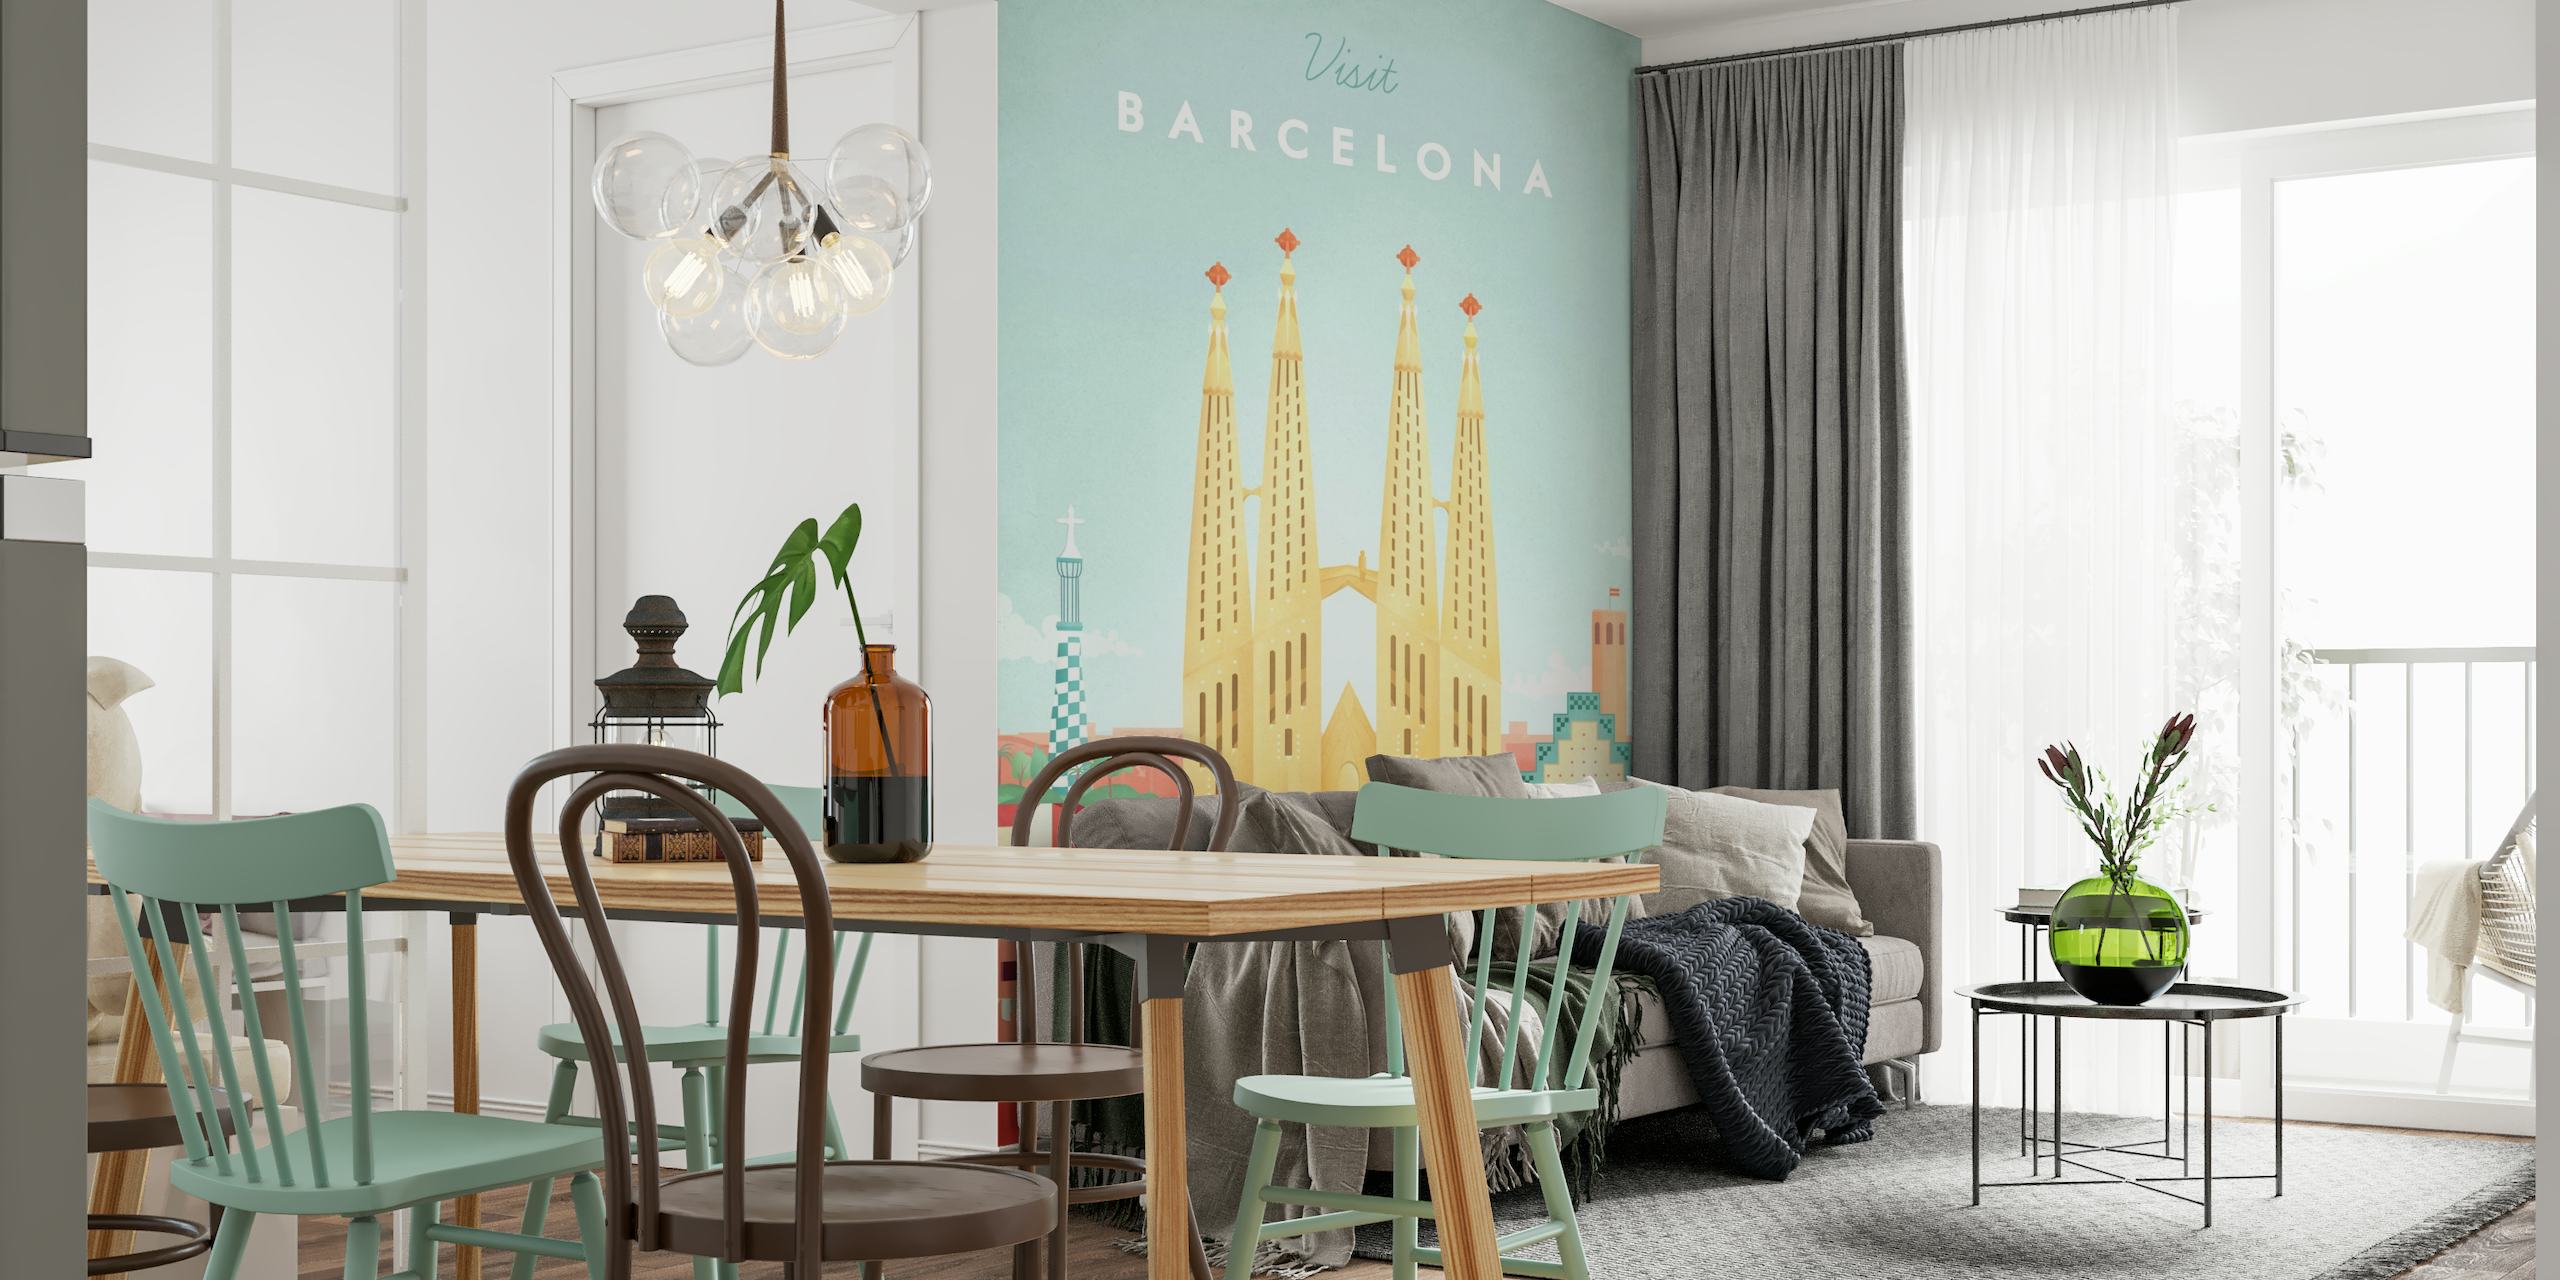 Barcelona Travel Poster tapete